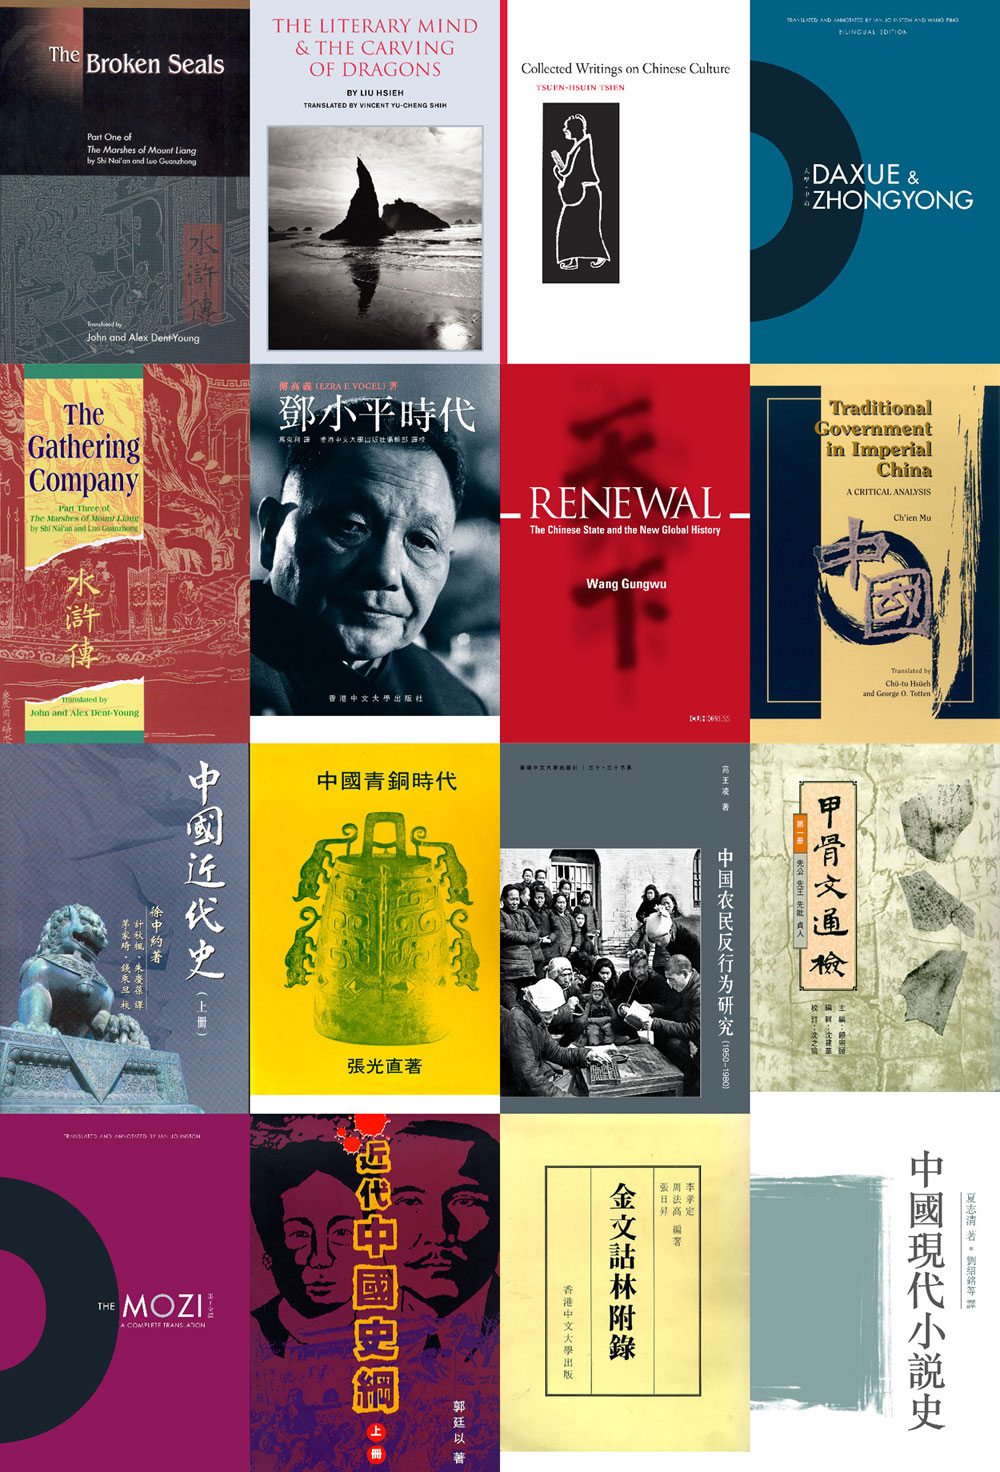 中文大學出版社以「弘揚中西文化，傳播古今知識」為宗旨，迄今已出版的書籍逾1,300種，尤專於出版有關中國文化以及中國、香港研究的學術論著。